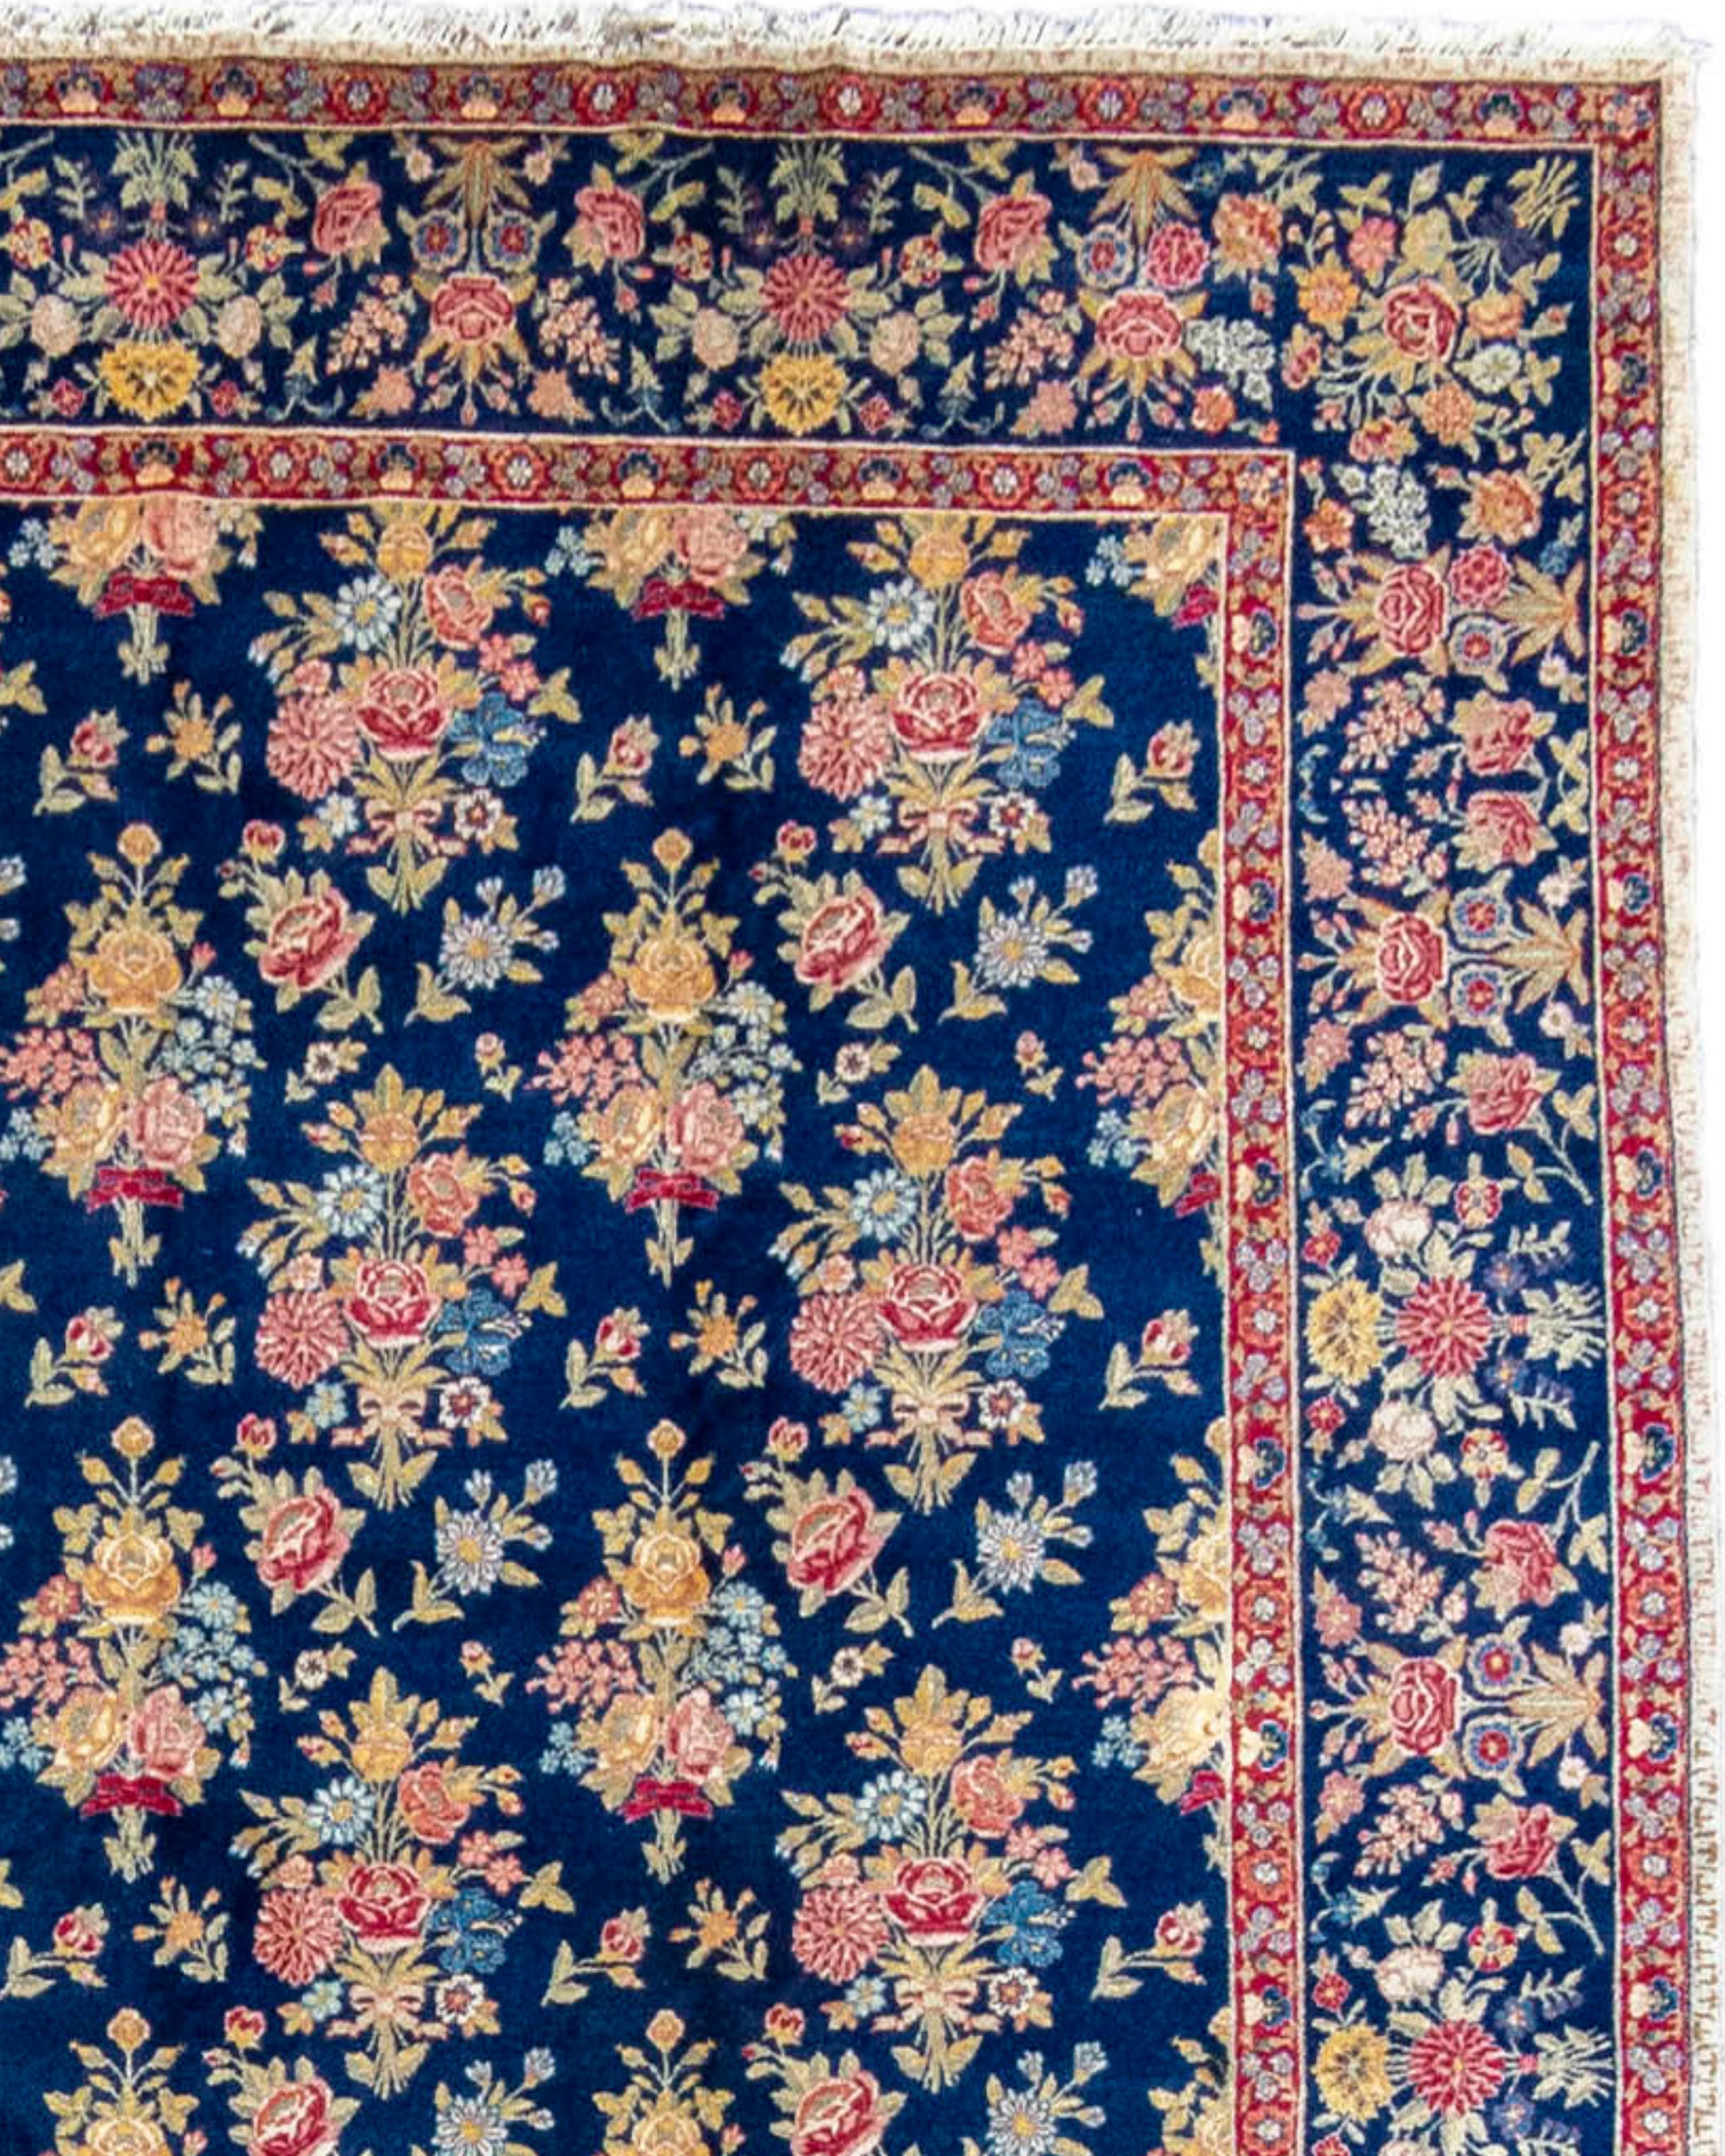 19th Century Antique Persian Floral Tabriz Carpet, c. 1900 For Sale